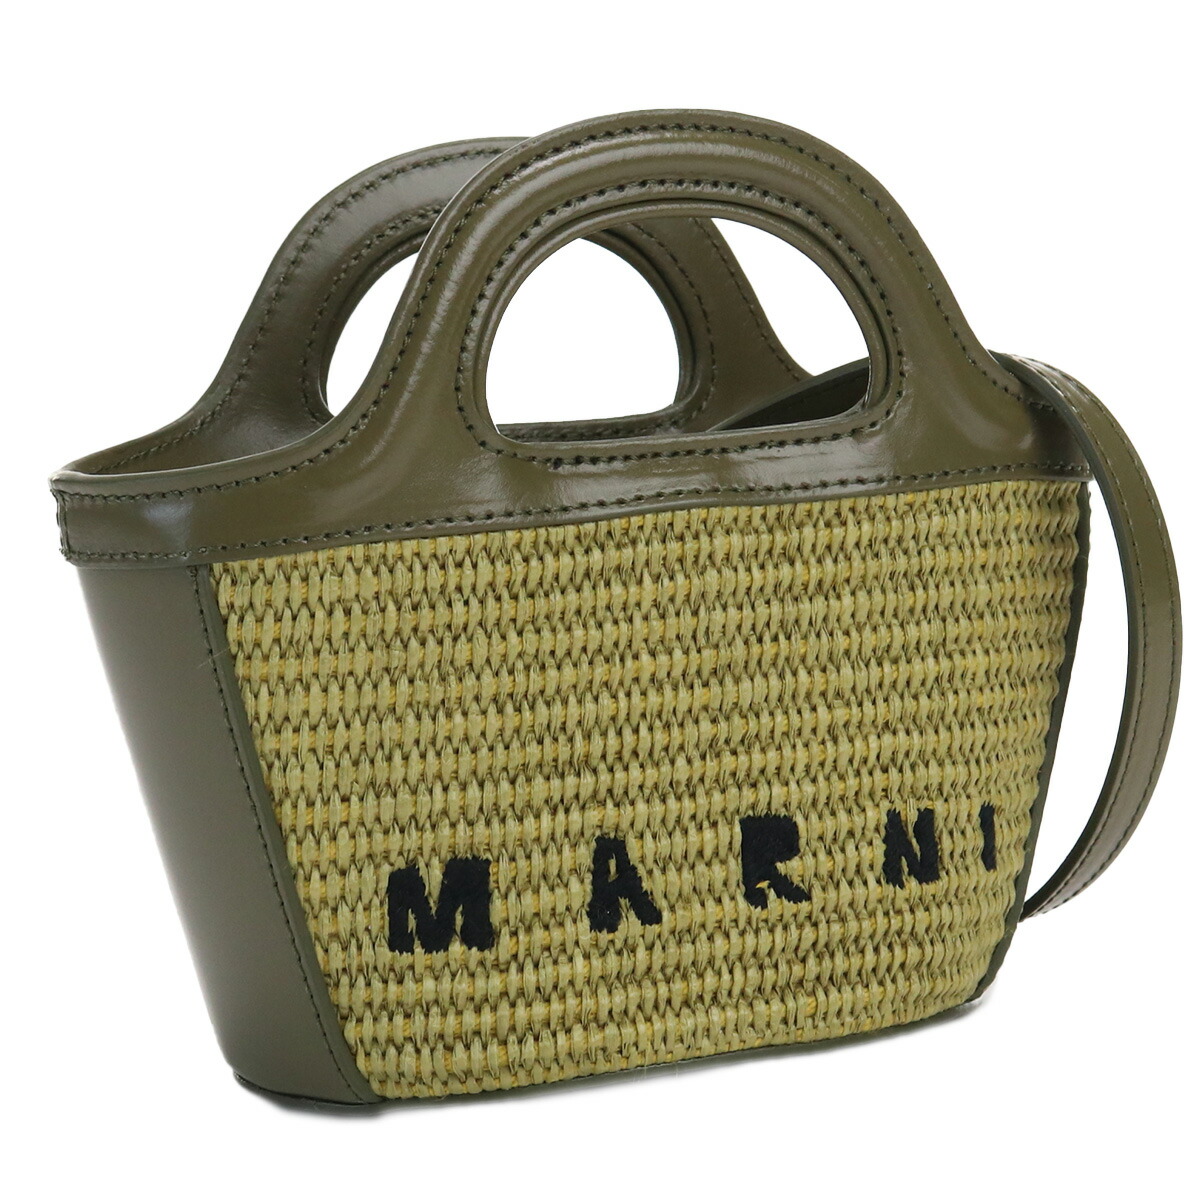 マルニ MARNI  カゴバッグ ブランド 2way ハンドバッグ バスケットバッグ ロゴ BMMP0067Q0 P3860 00V25 カーキ bag-01 kago-01